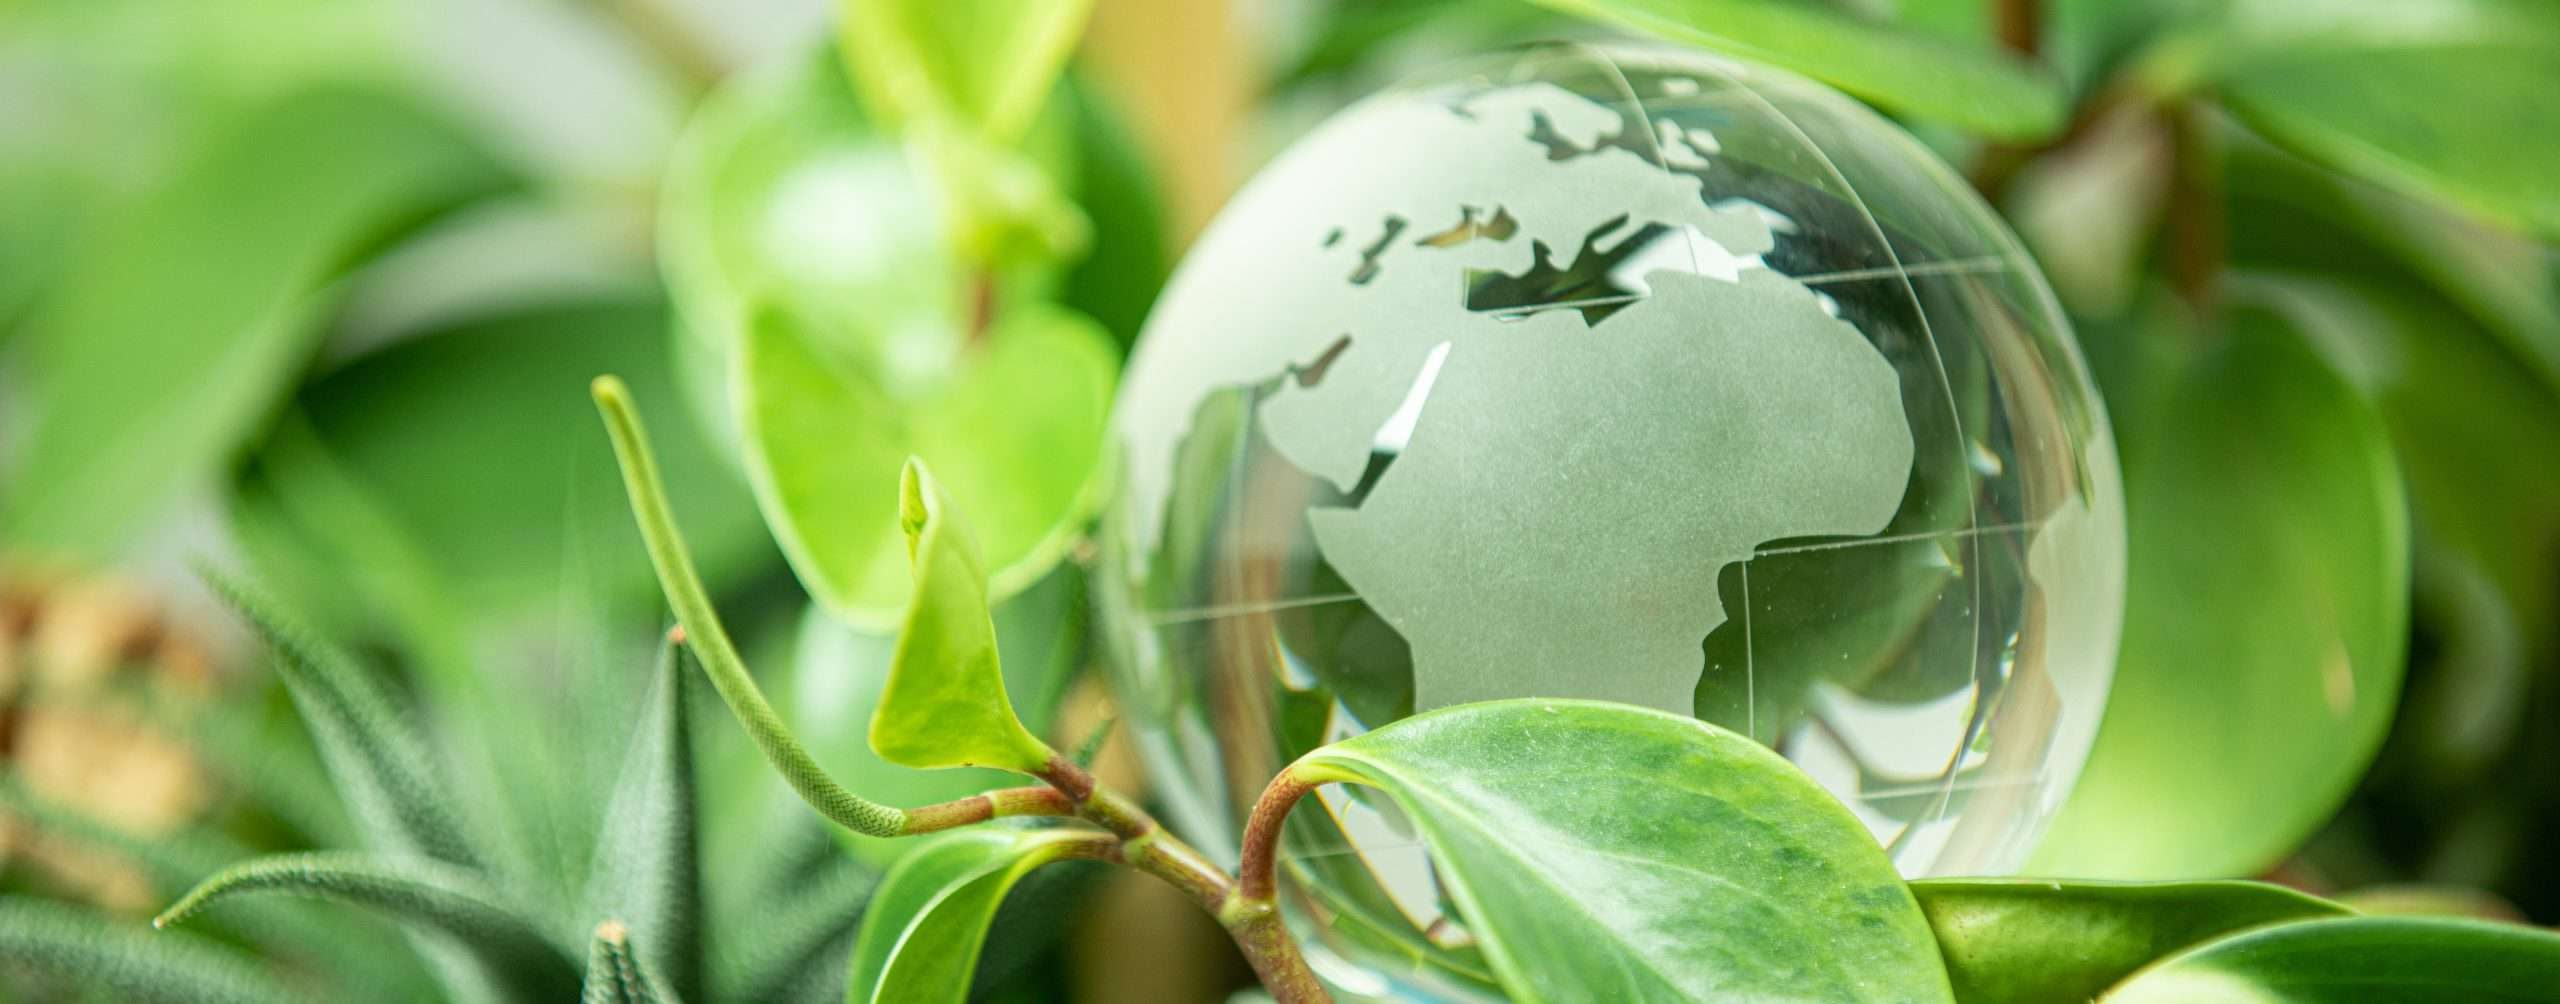 Soziale Verantwortung: Grüne Welt mit Glaskugel